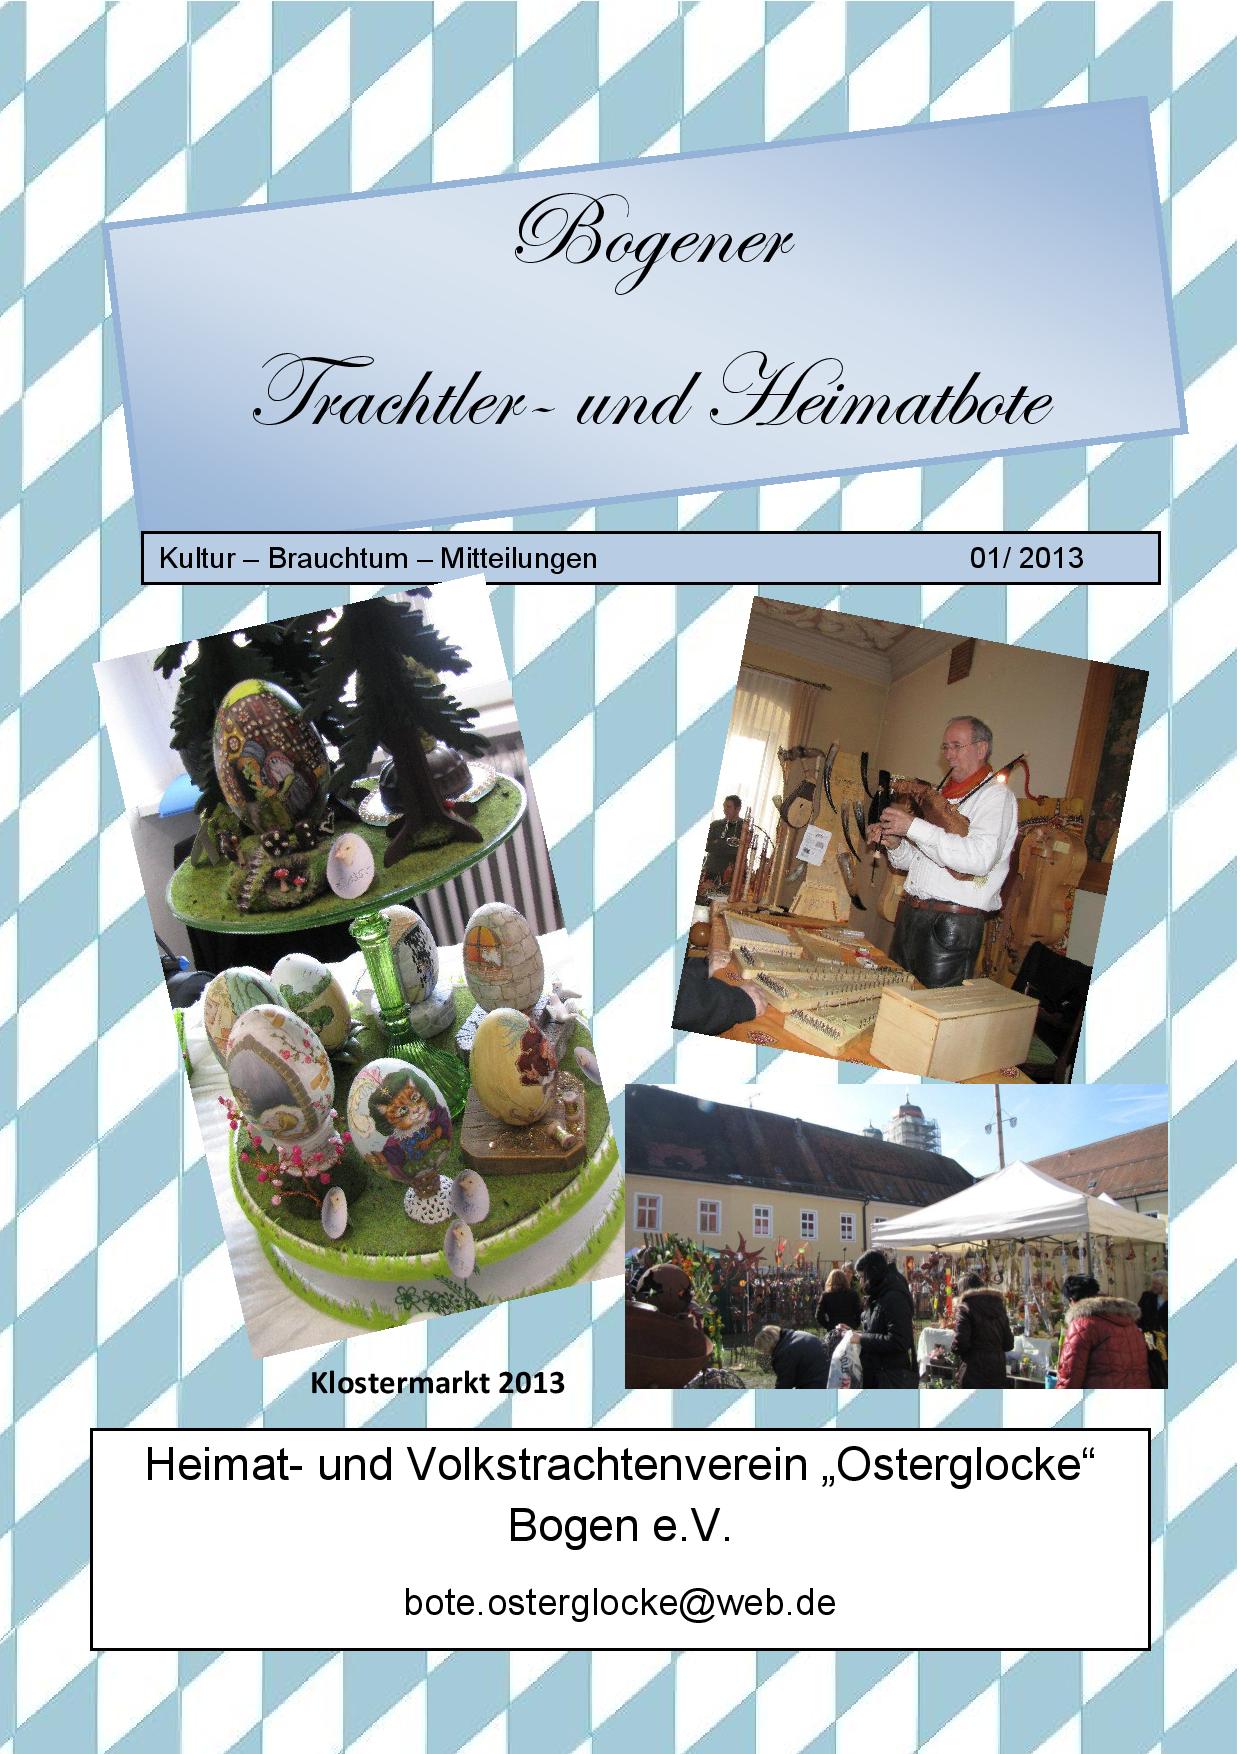 Bogener Trachtler- und Heimatbote 01/2013 (Deckblatt)